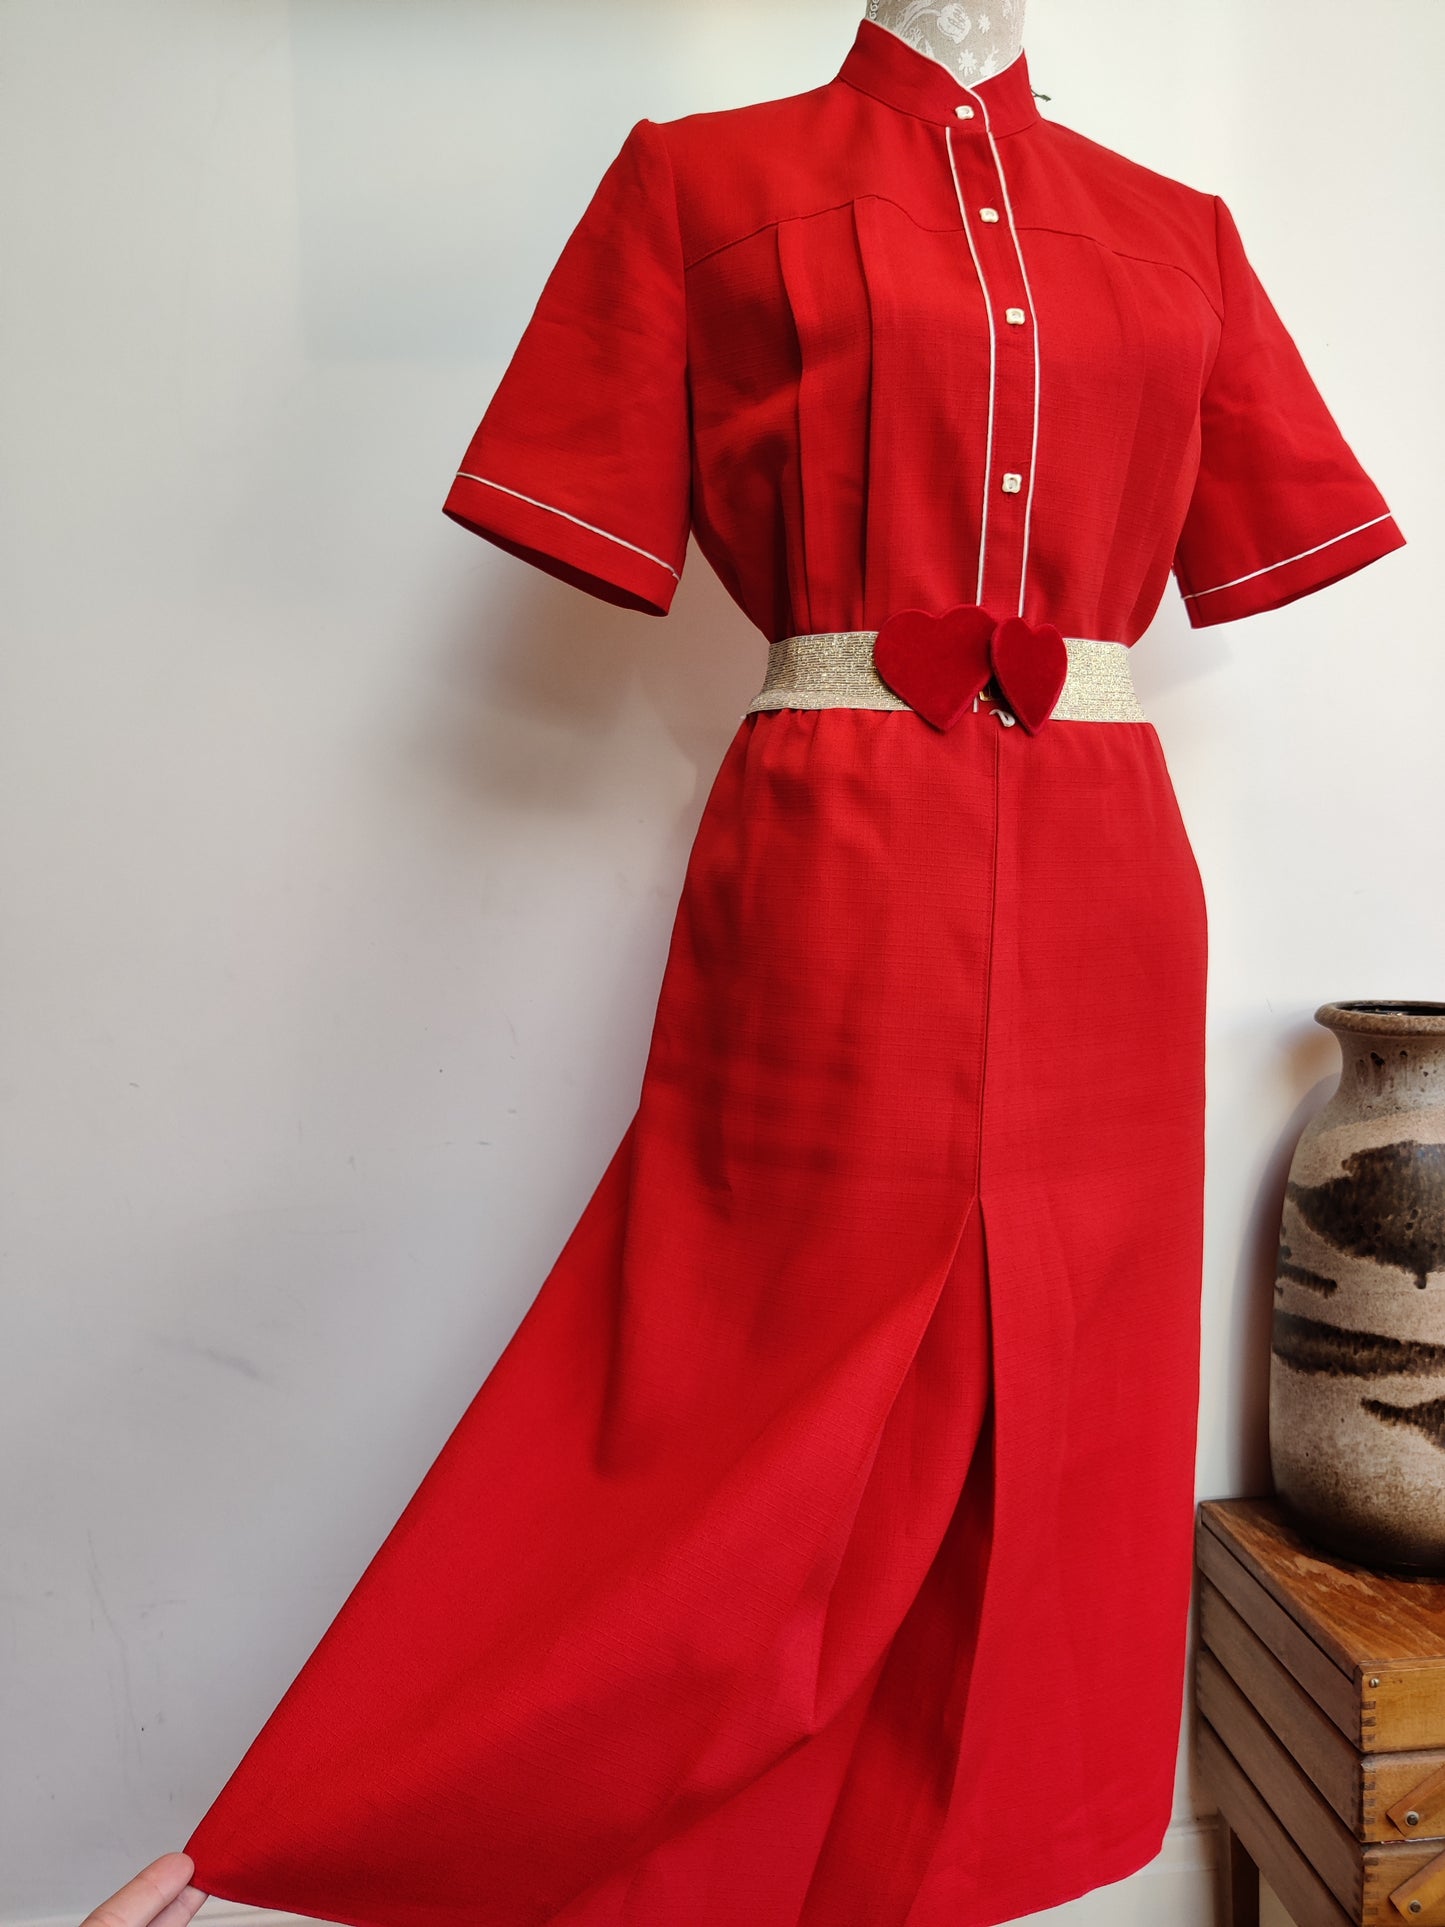 Red vintage dress size 12-14